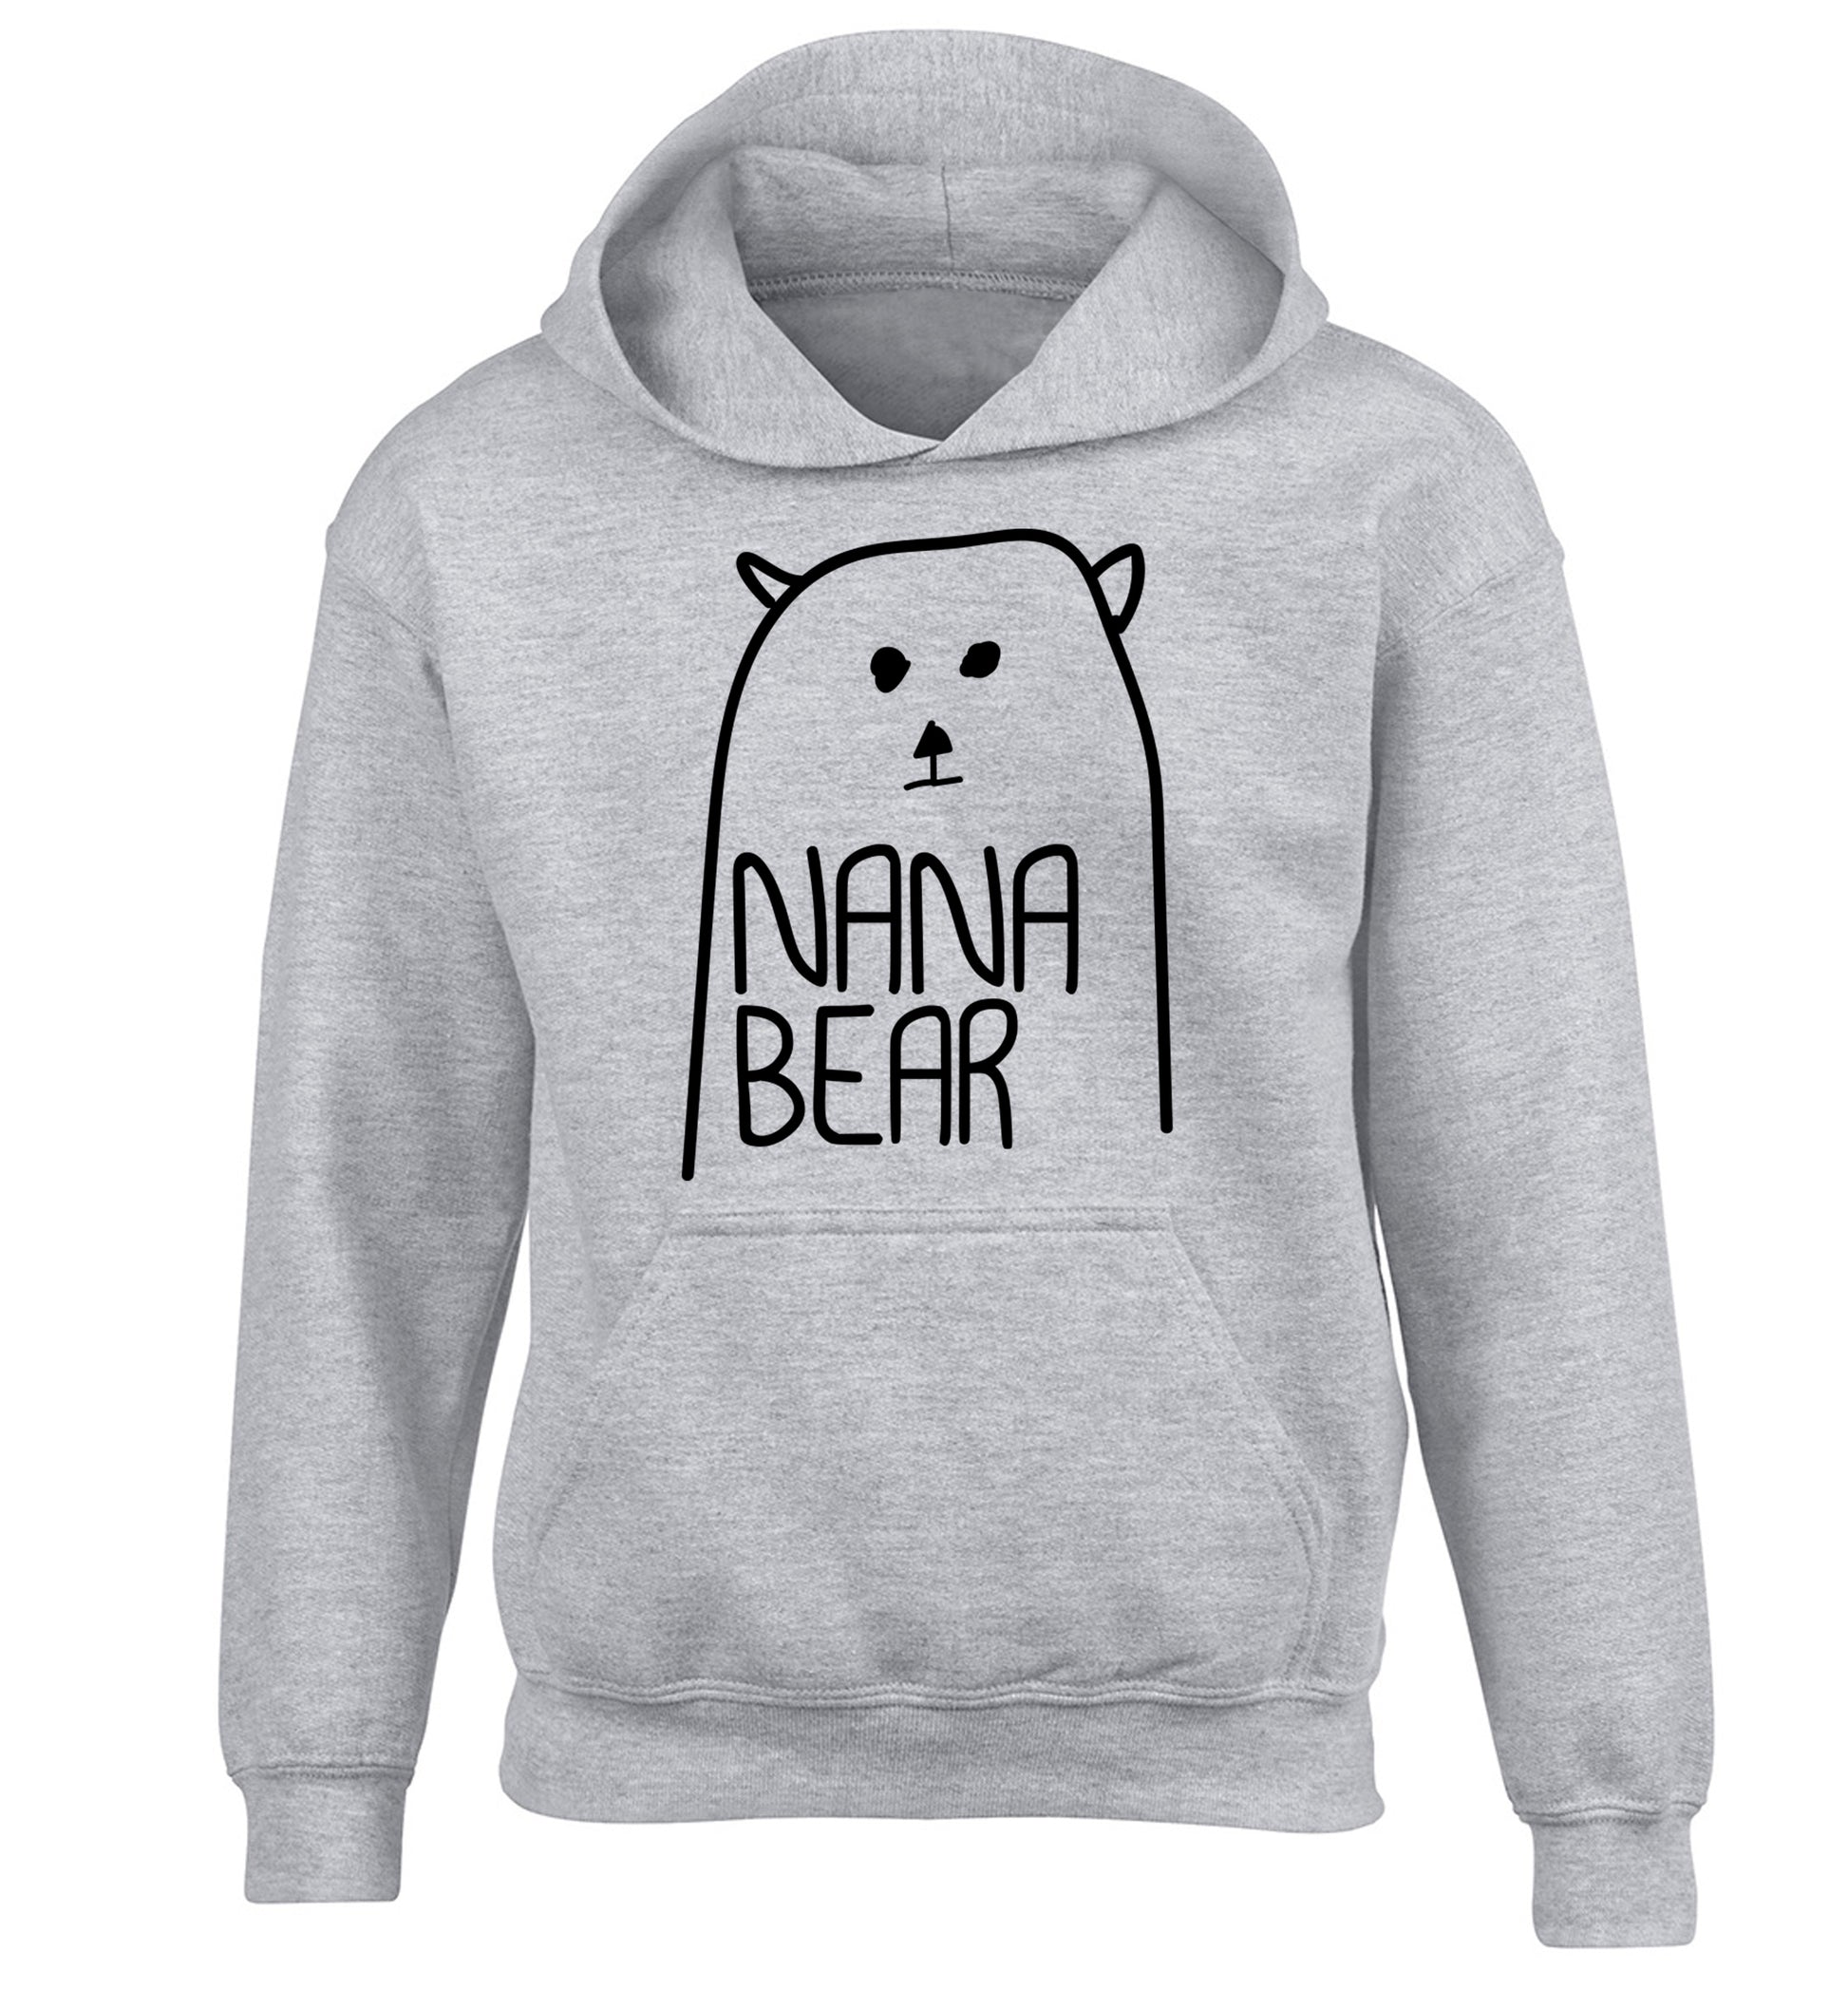 Nana bear children's grey hoodie 12-13 Years